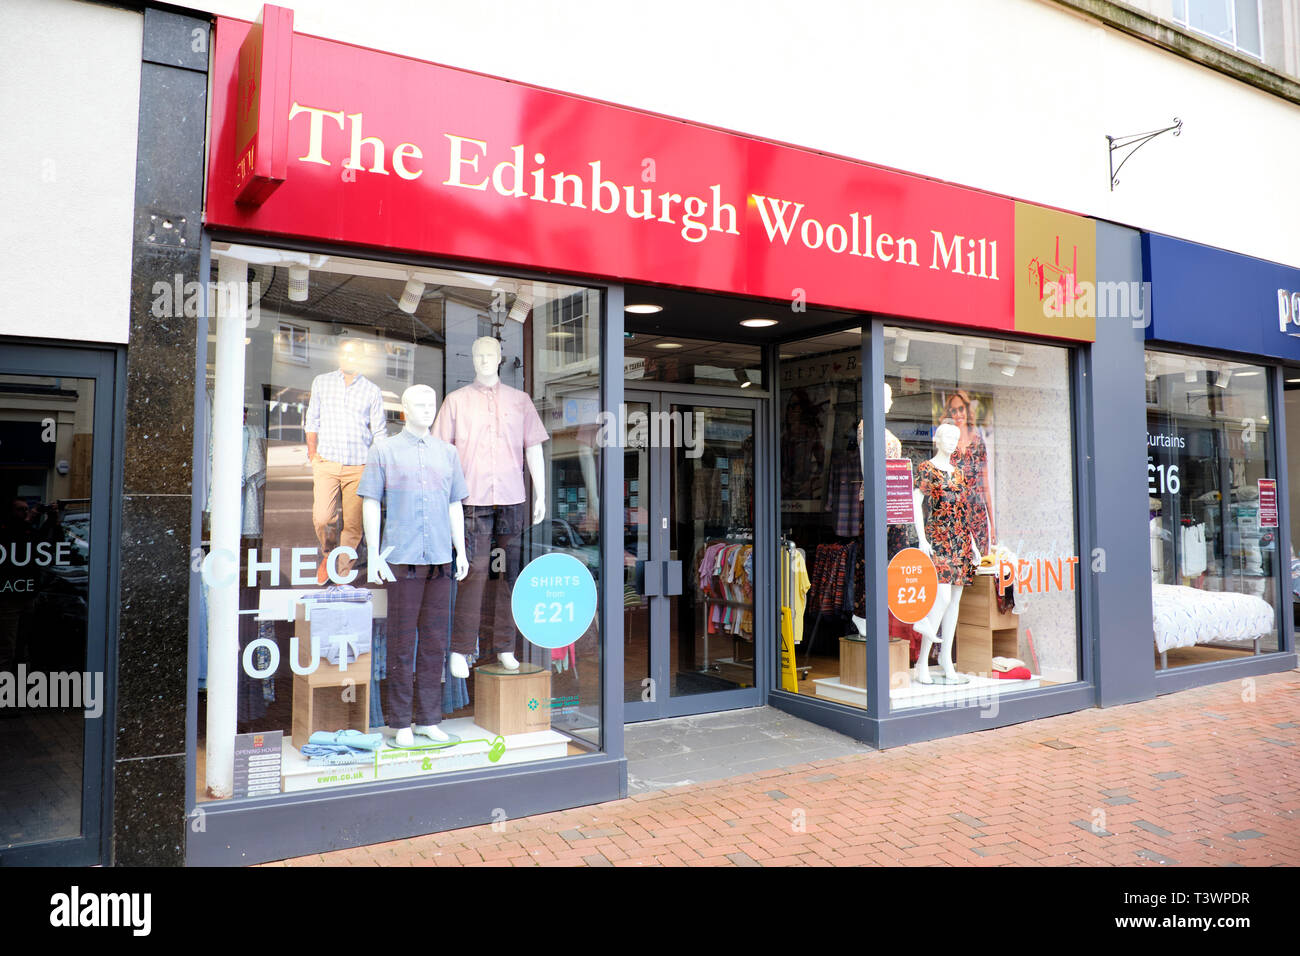 Façade de l'Edinburgh Woollen Mill Boutique, Place du marché, Rugby, Warwickshire, UK Banque D'Images